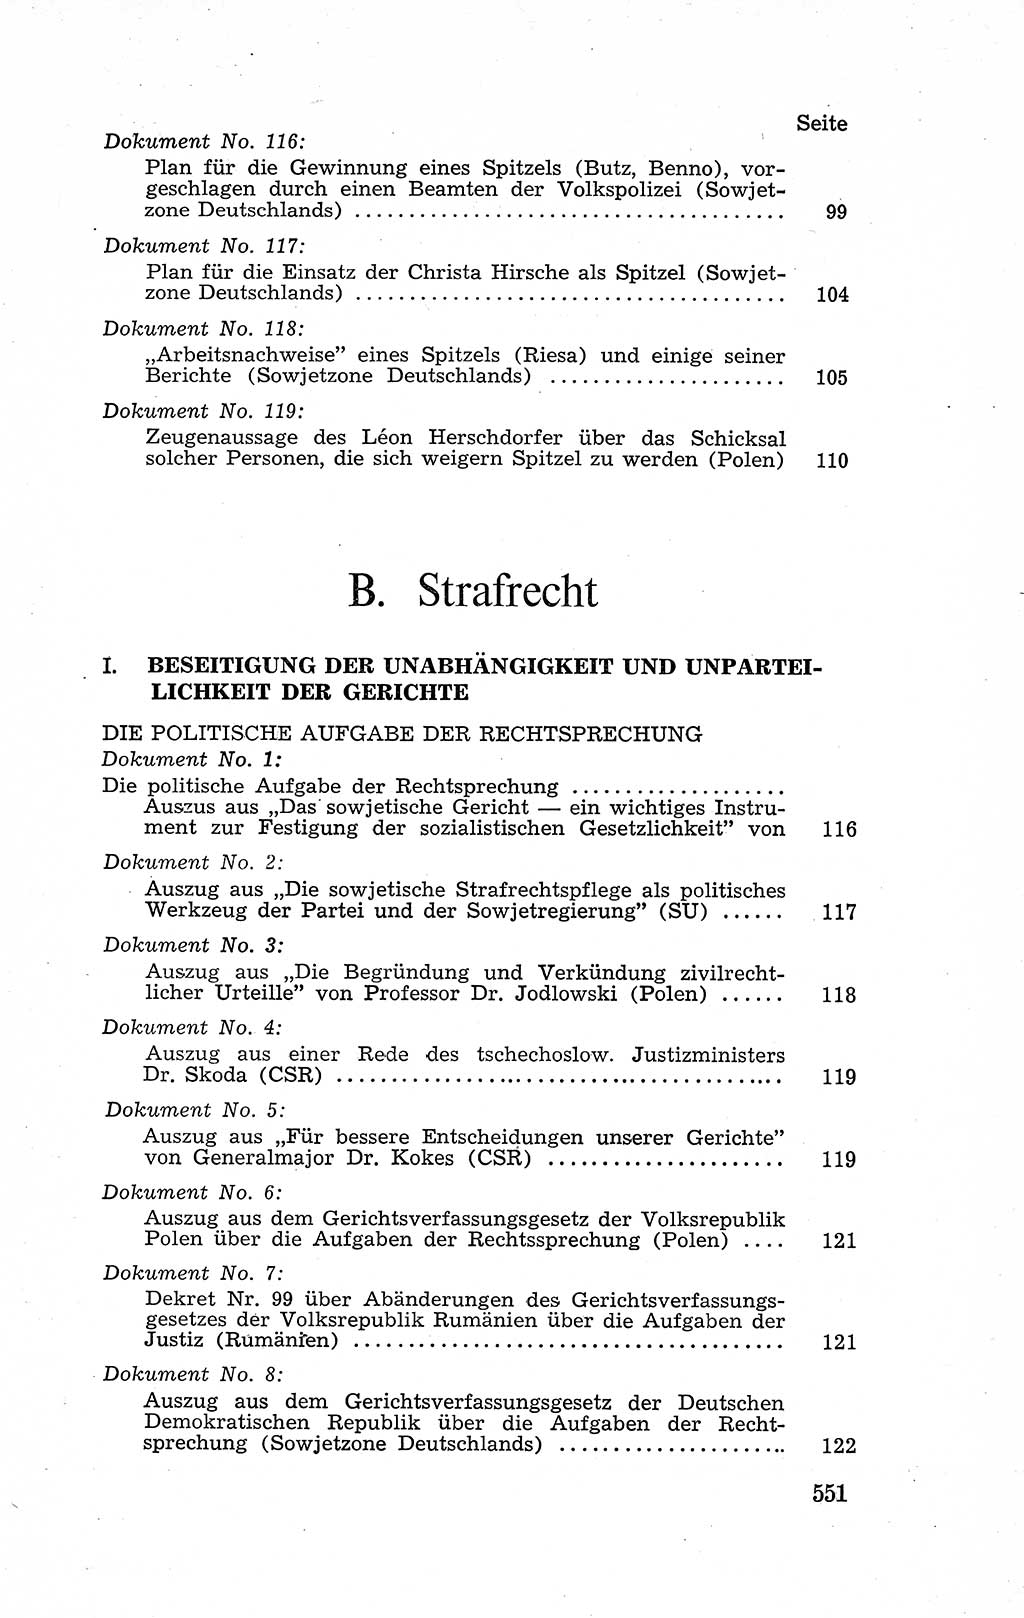 Recht in Fesseln, Dokumente, Internationale Juristen-Kommission [Bundesrepublik Deutschland (BRD)] 1955, Seite 551 (R. Dok. IJK BRD 1955, S. 551)